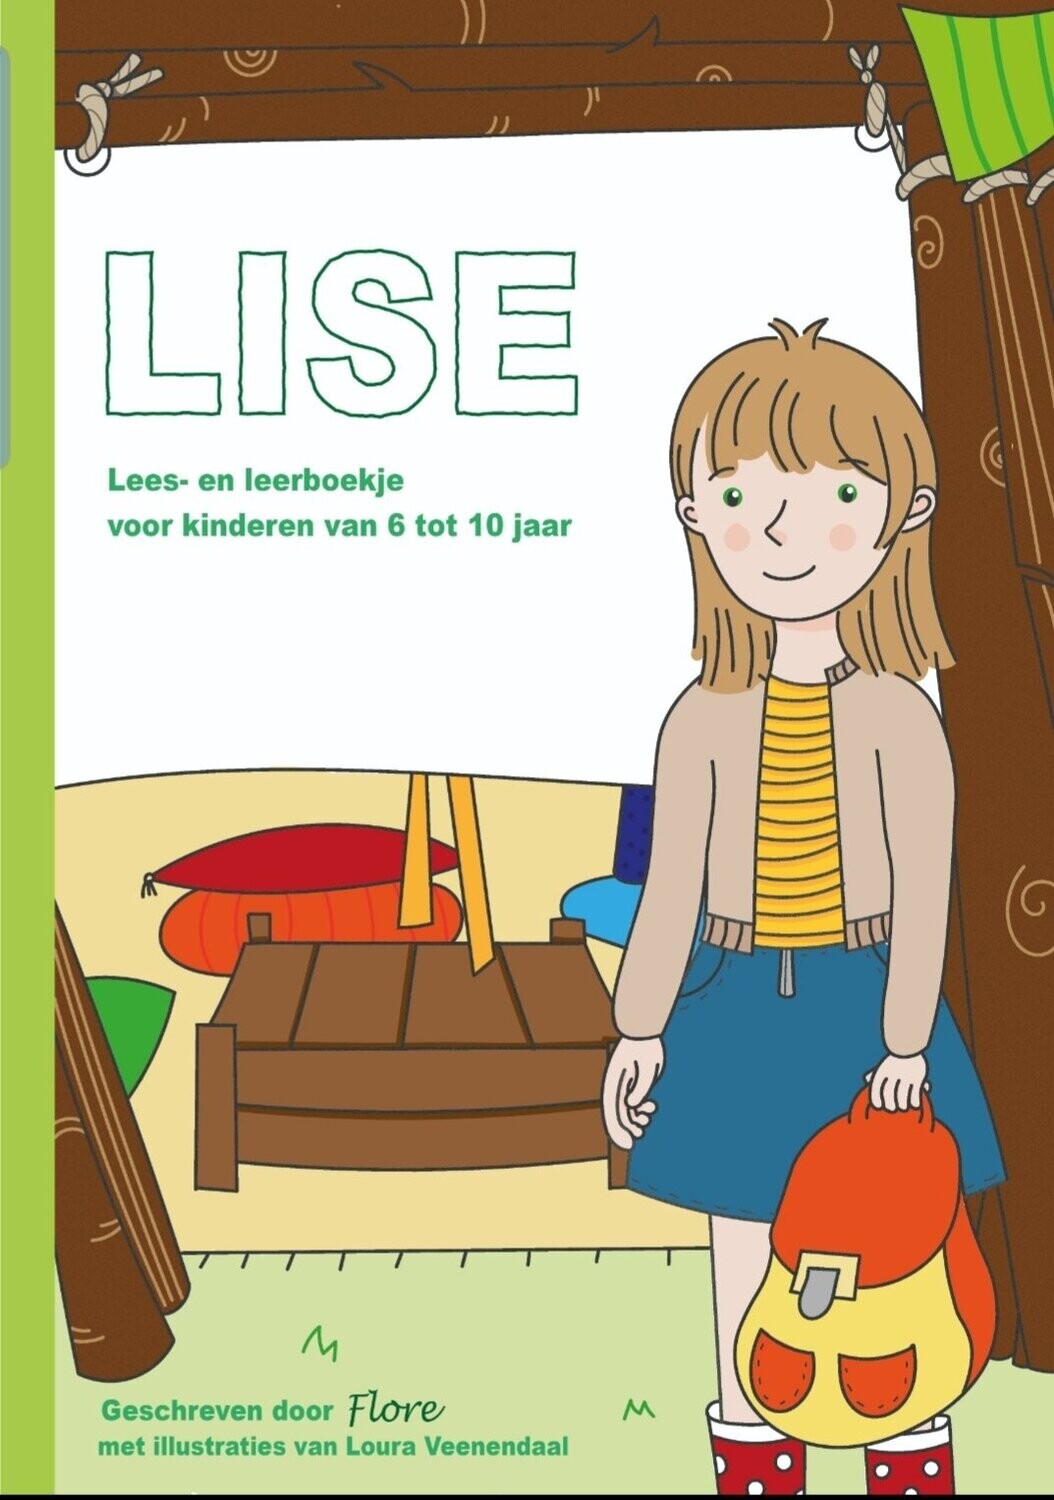 Lise (over seksueel misbruik)
Lees- en leerboekje (inclusief verzendkosten €10,- !!!)